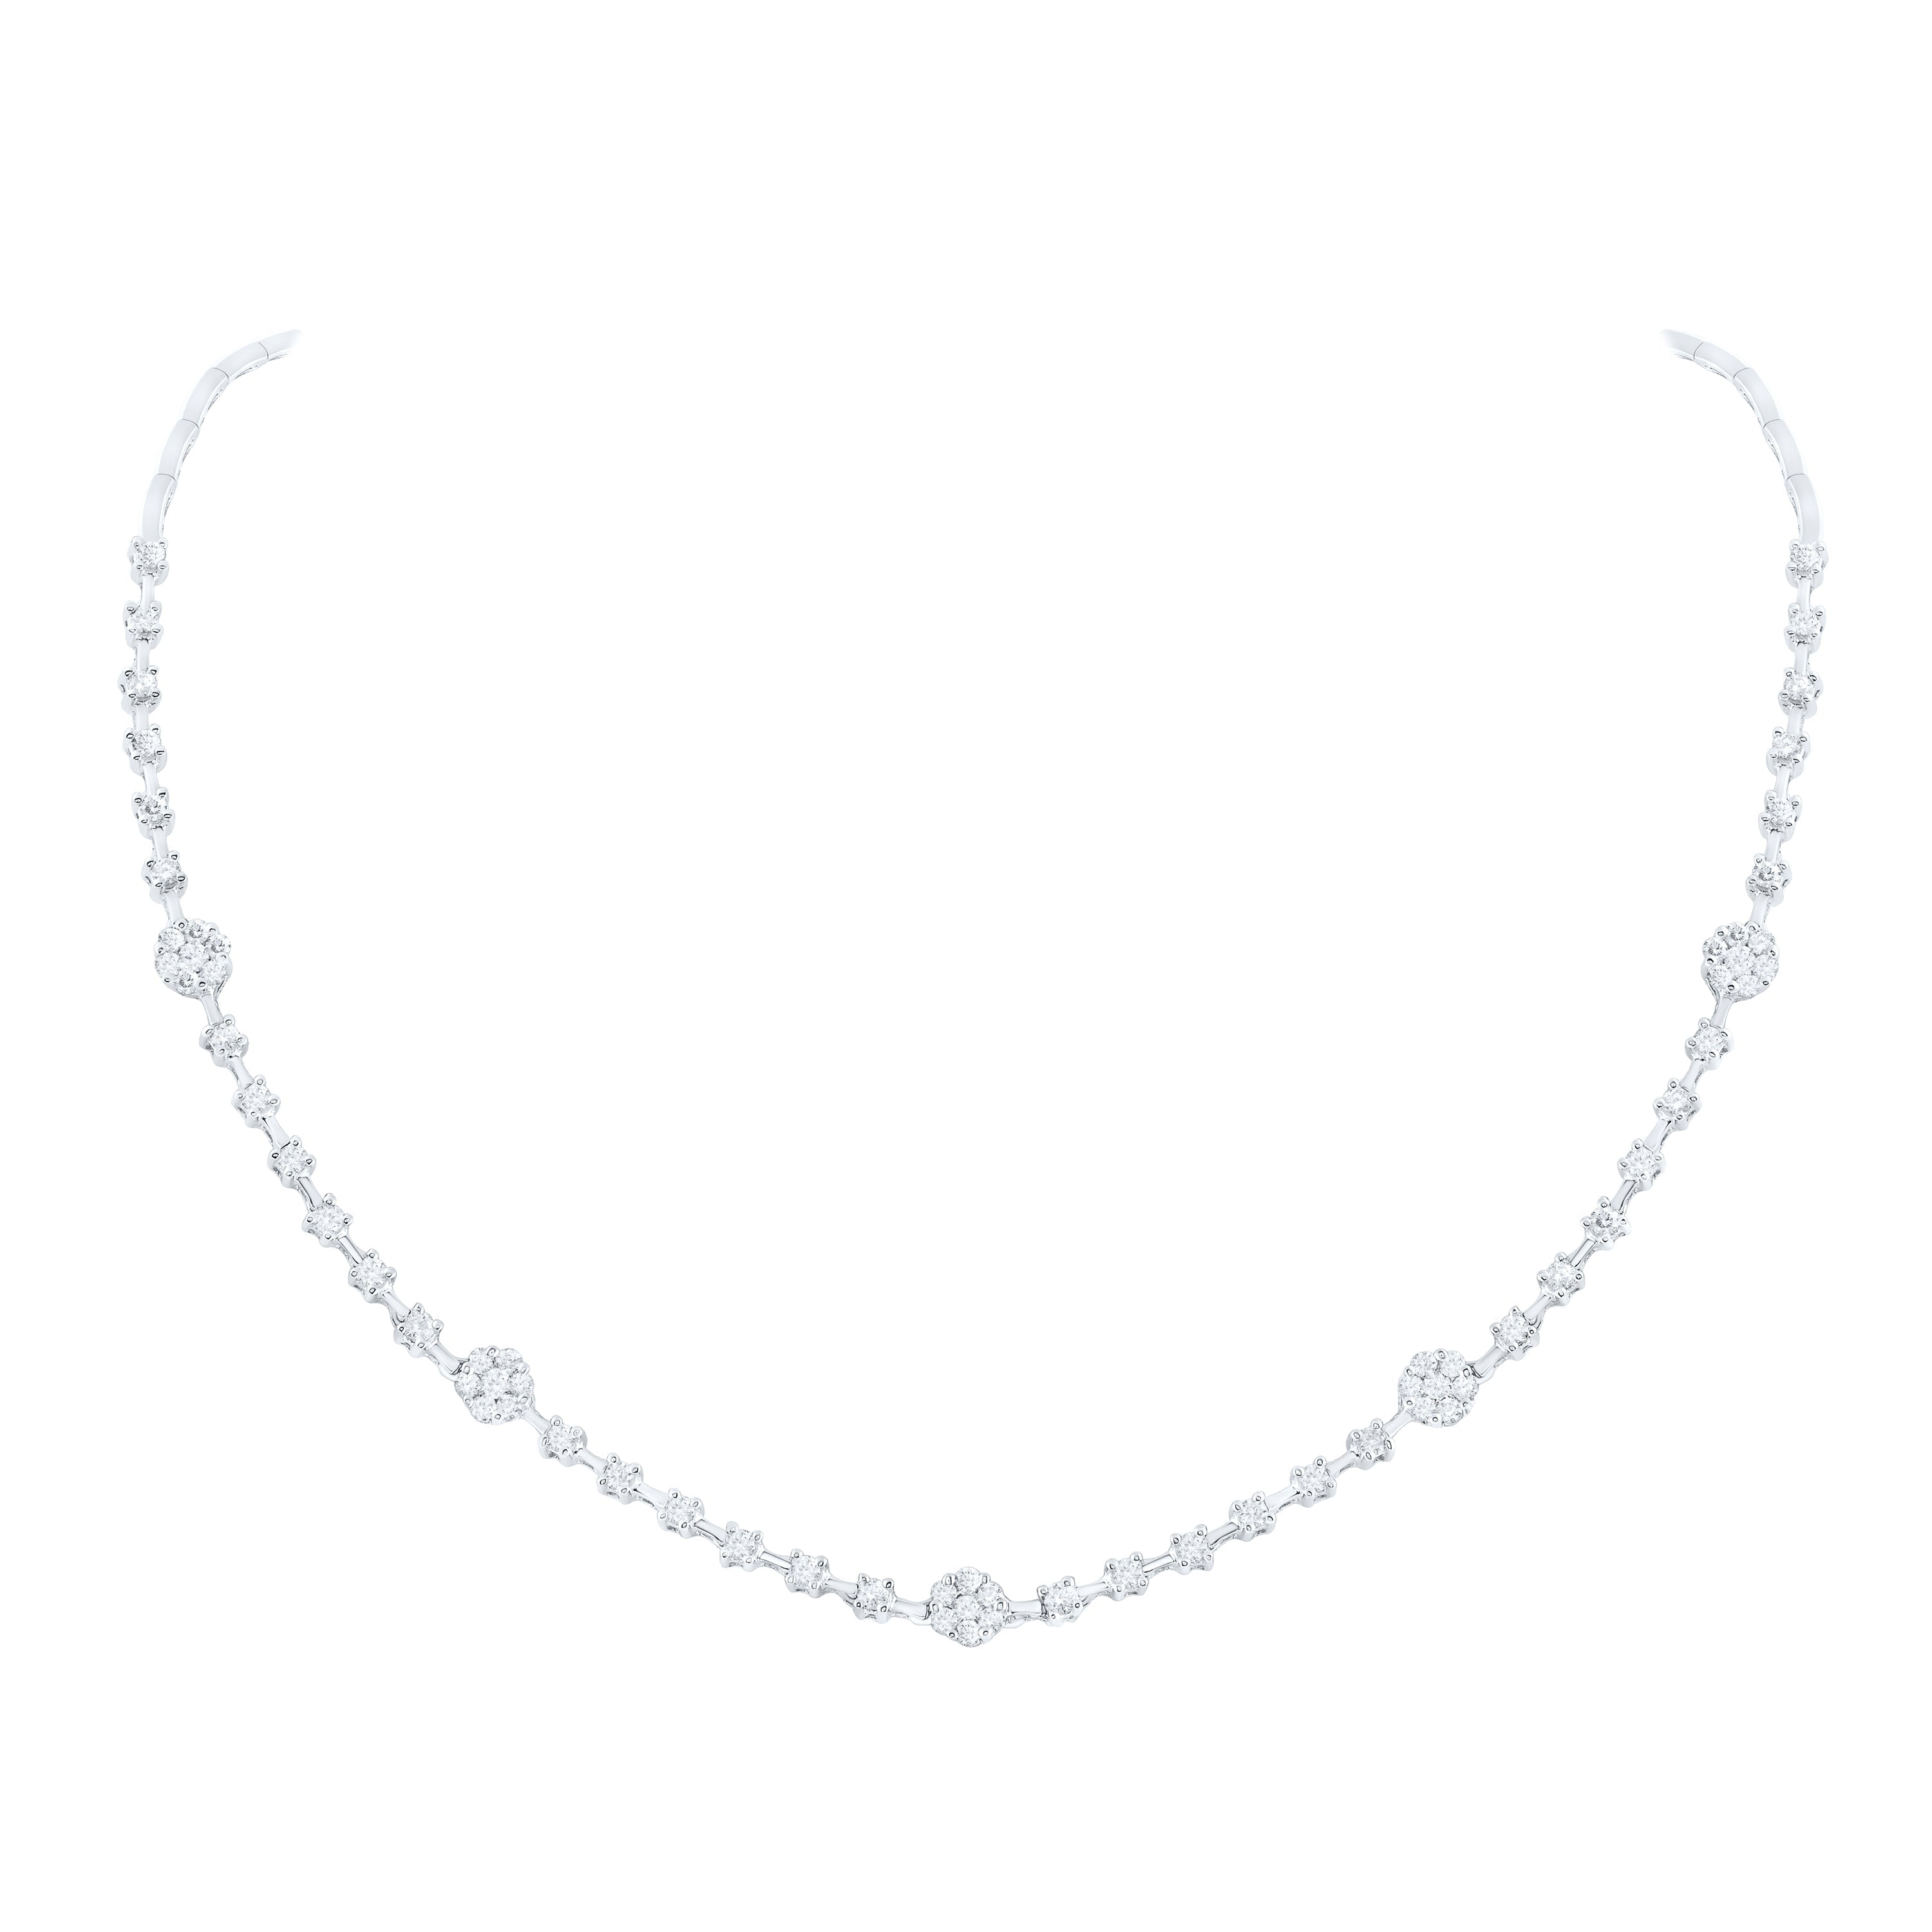 Modern White Gold Diamond Pendant Design for Women | PC Chandra